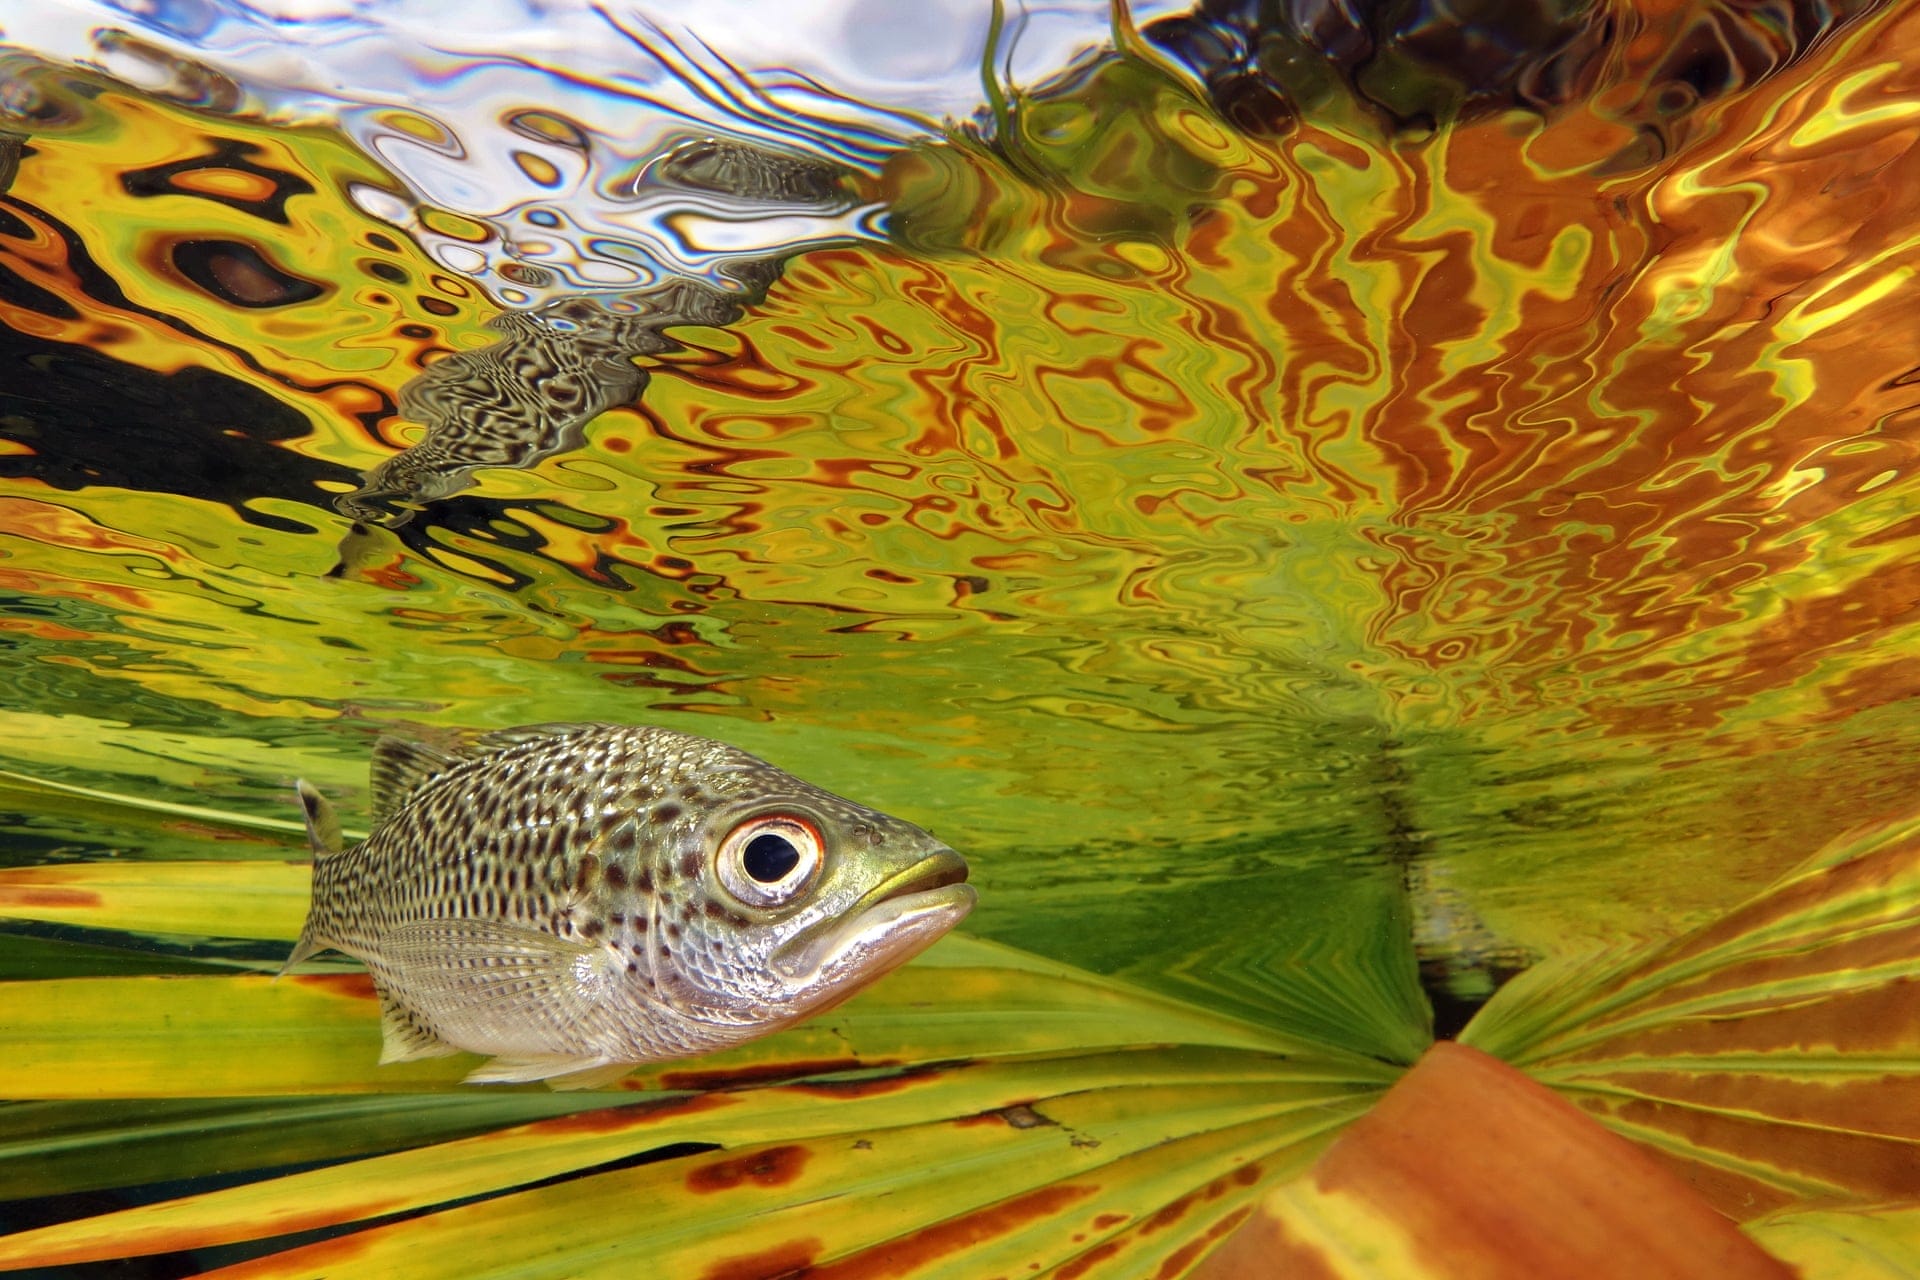 Petit poisson gris au dessus d'une feuille jaune, verte et orange qui se reflète à la surface